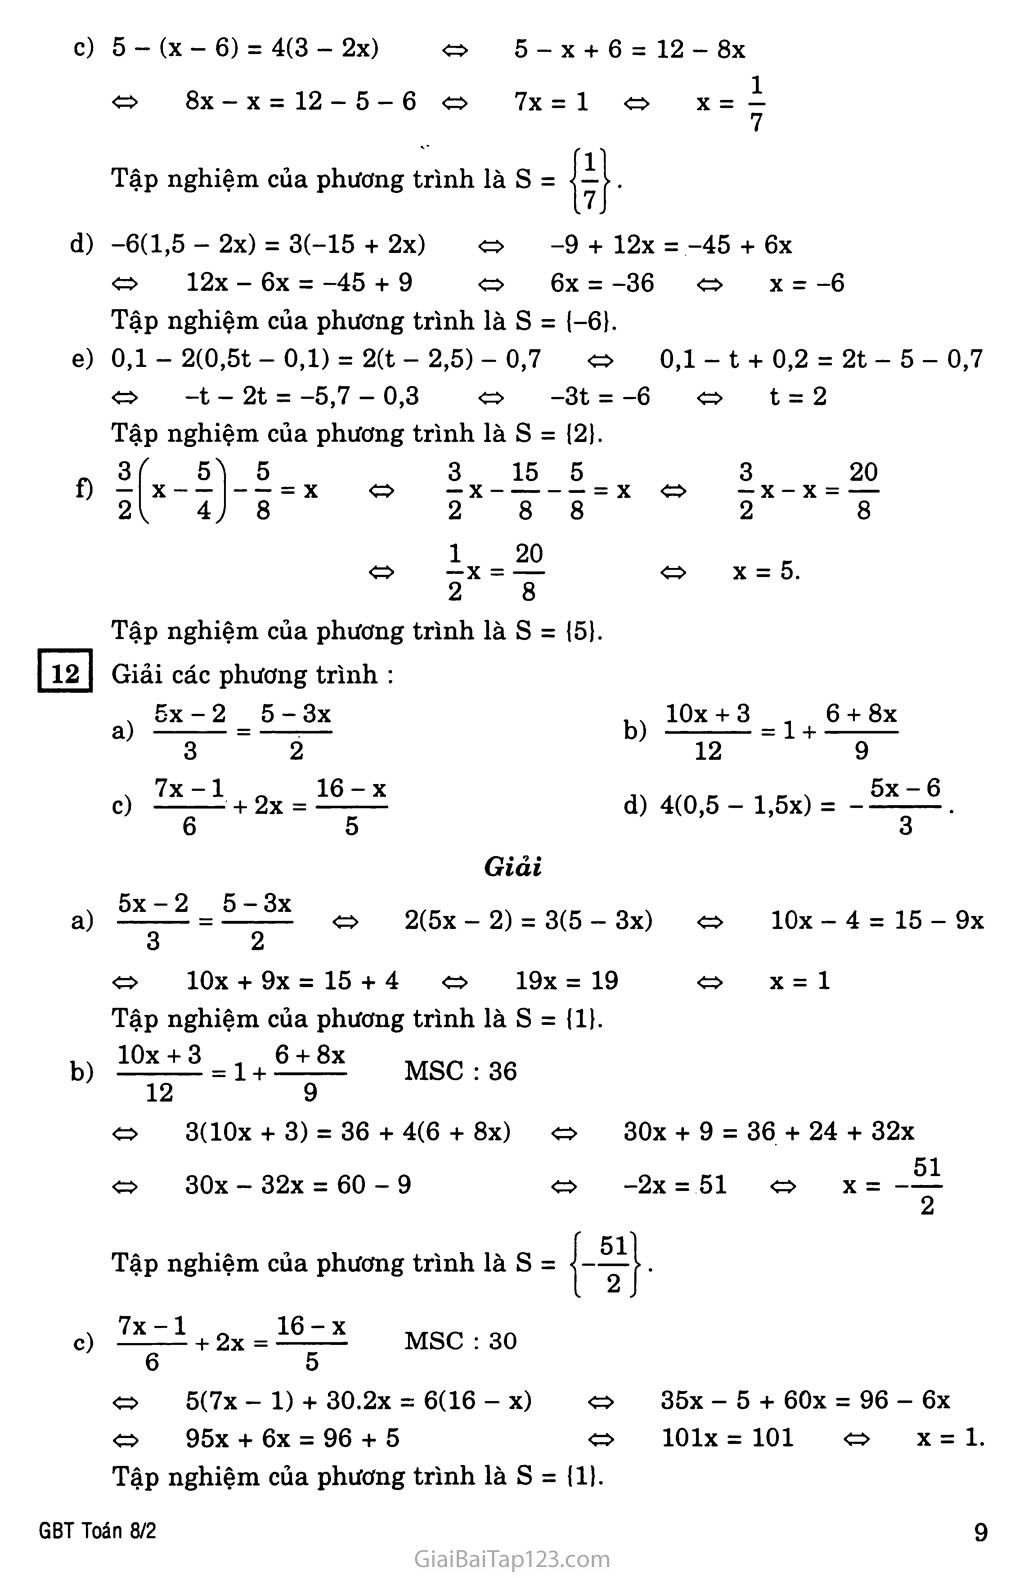 §3. Phương trình đưa được về dạng ax + b = 0 trang 3